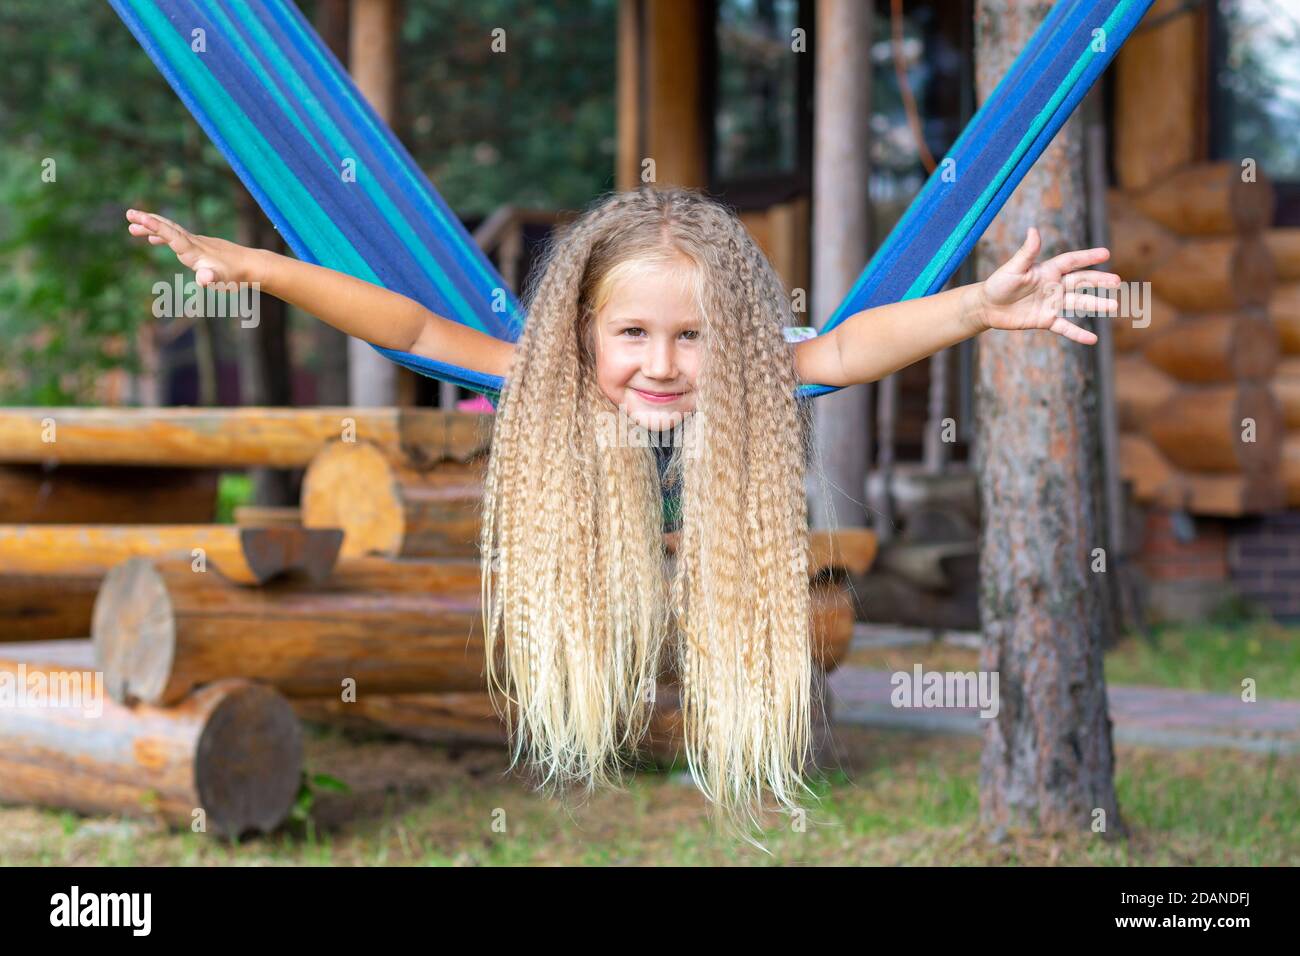 Kleines glückliches Mädchen mit langen blonden lockigen Haaren schwingt die Arme auf einer blau-grünen Hängematte ausgestreckt. Bewegungsfreiheit, Lebensstil. Schulferien, Urlaub Stockfoto